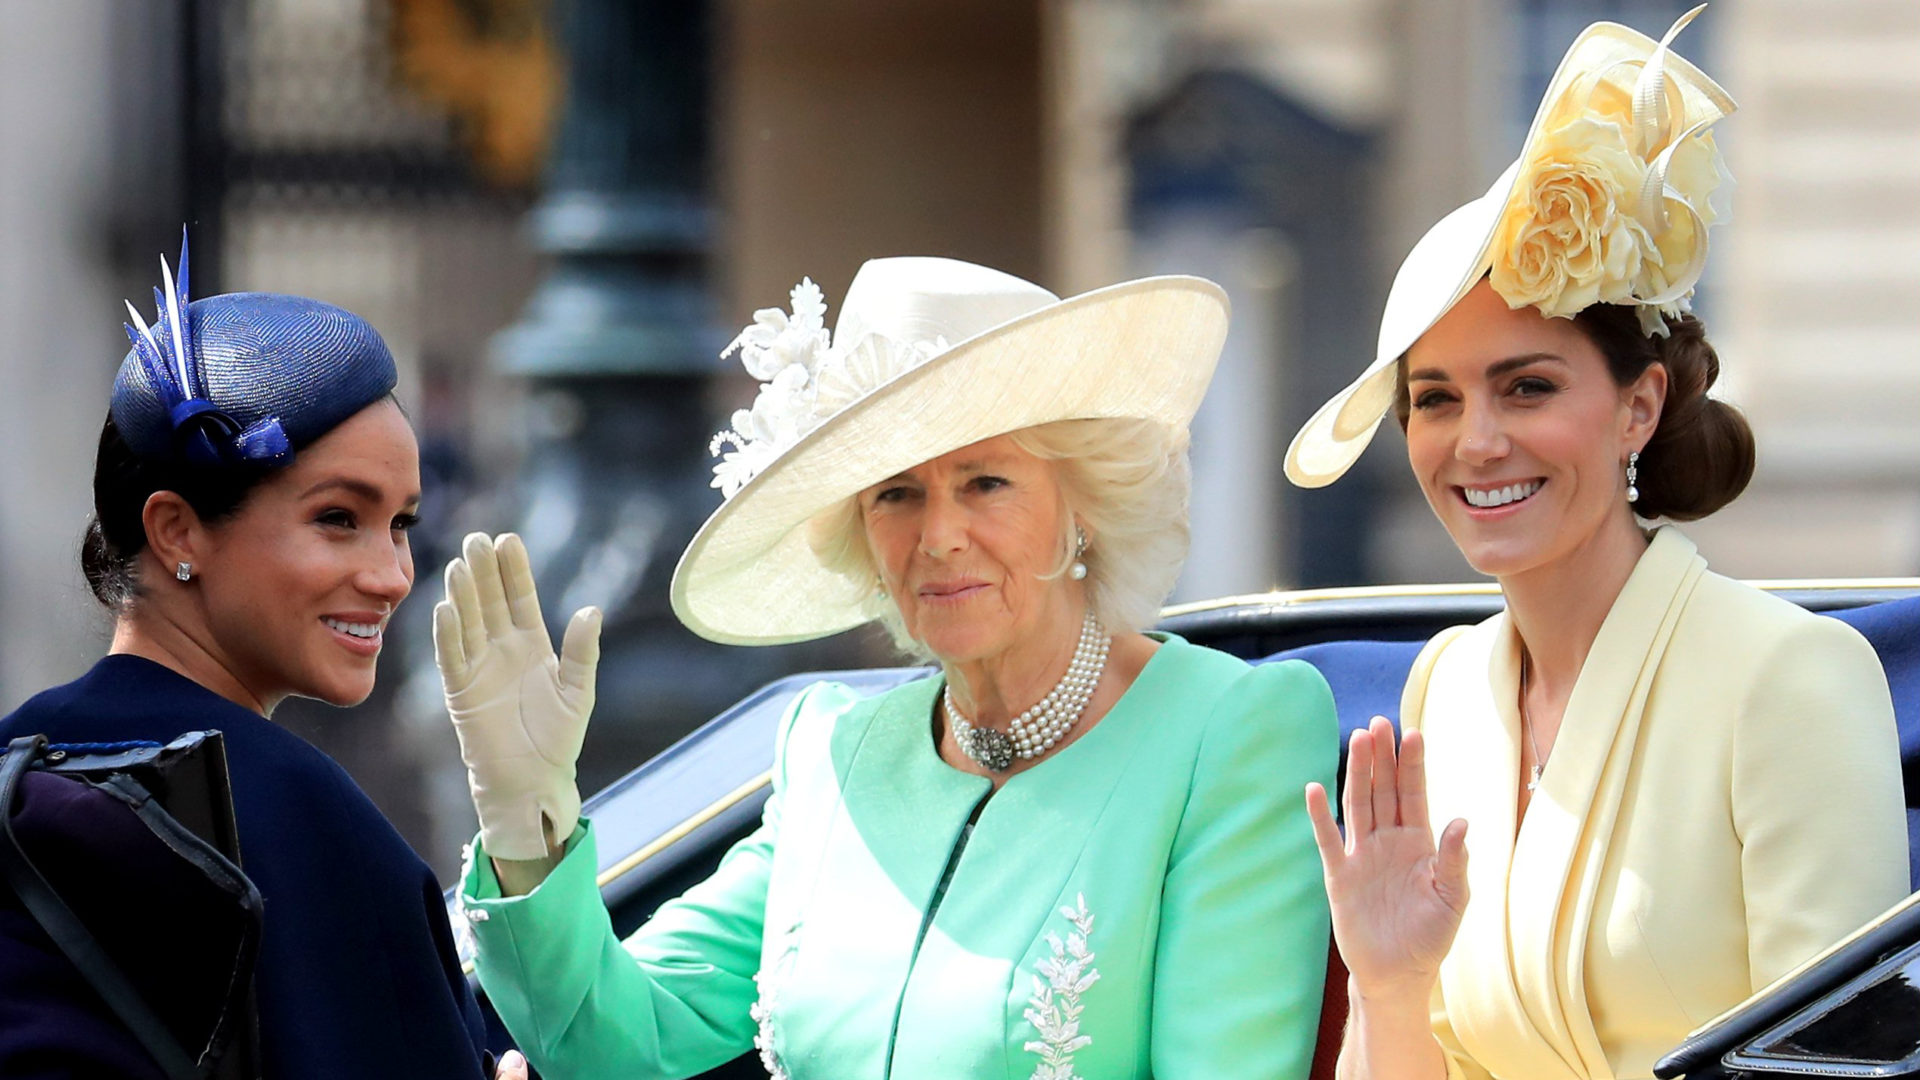 Herttuatar Catherine, Meghan ja Camilla matkalla kesäkuussa 2019 kuningatar Elizabeth II:sen viralliselle syntymäpäivävastaanotolle.